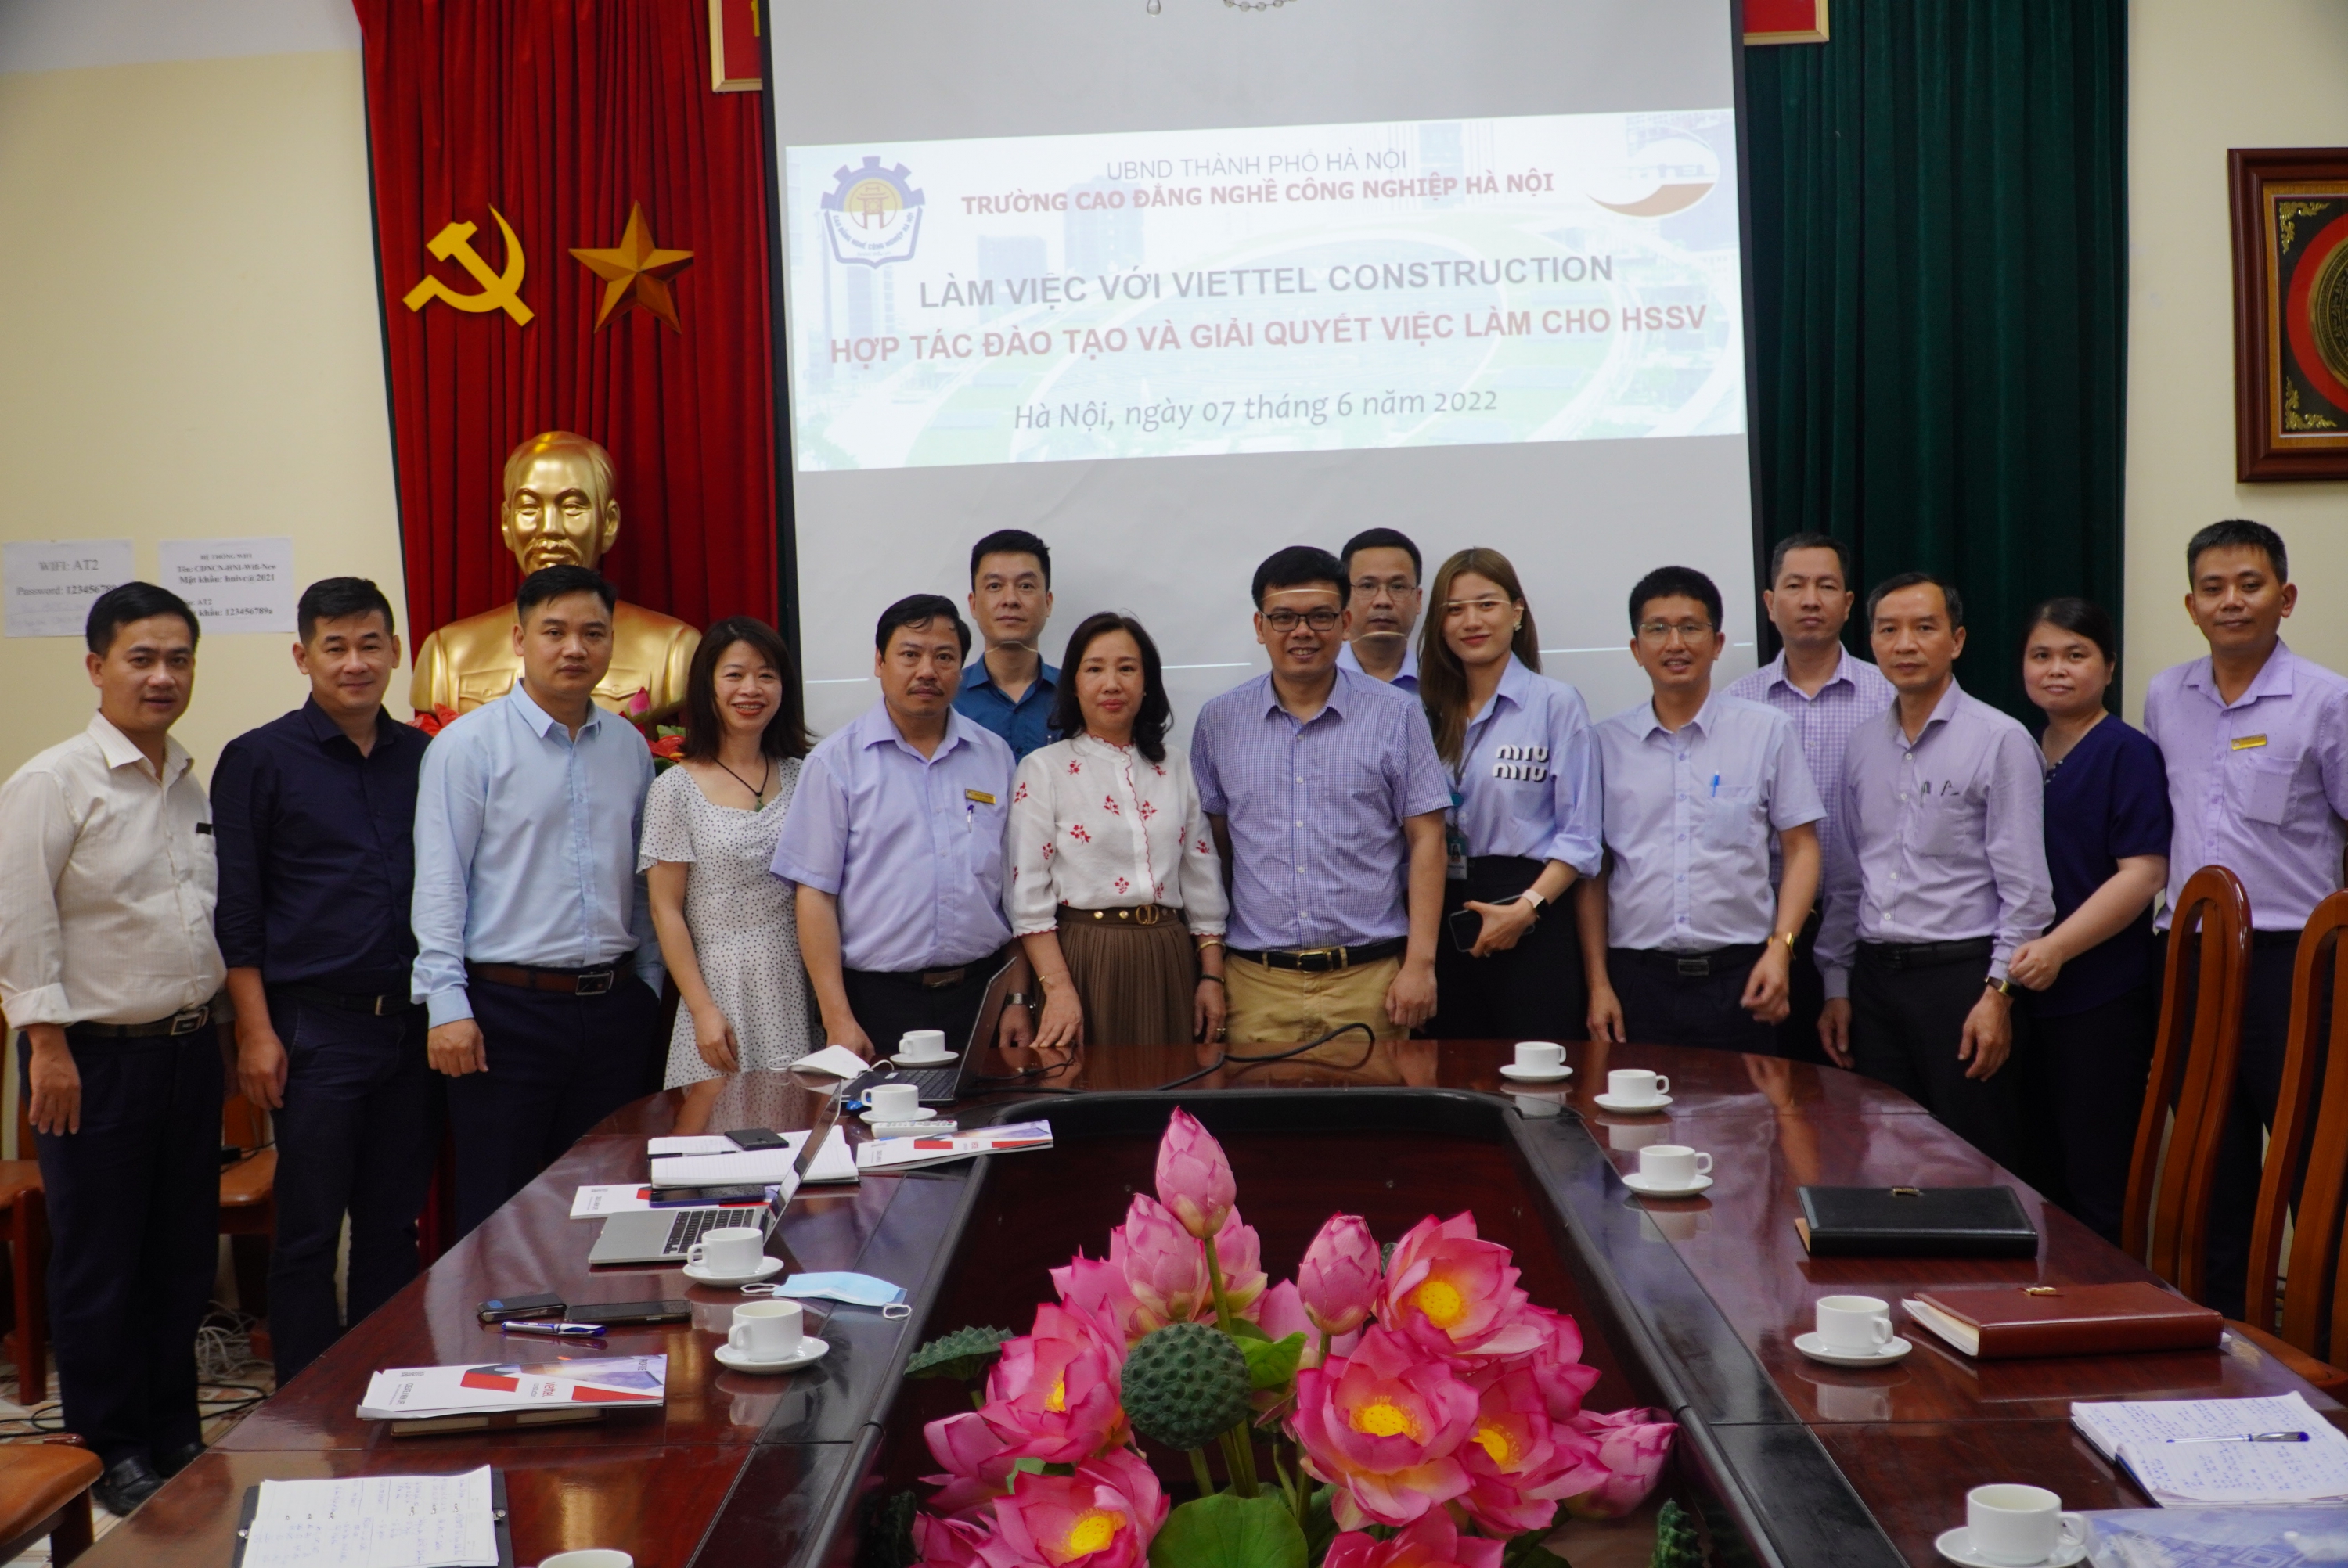 Hợp tác đào tạo và giải quyết việc làm cho HSSV giữa tổng công ty cp công trình Viettel với trường CĐN Công nghiệp Hà Nội